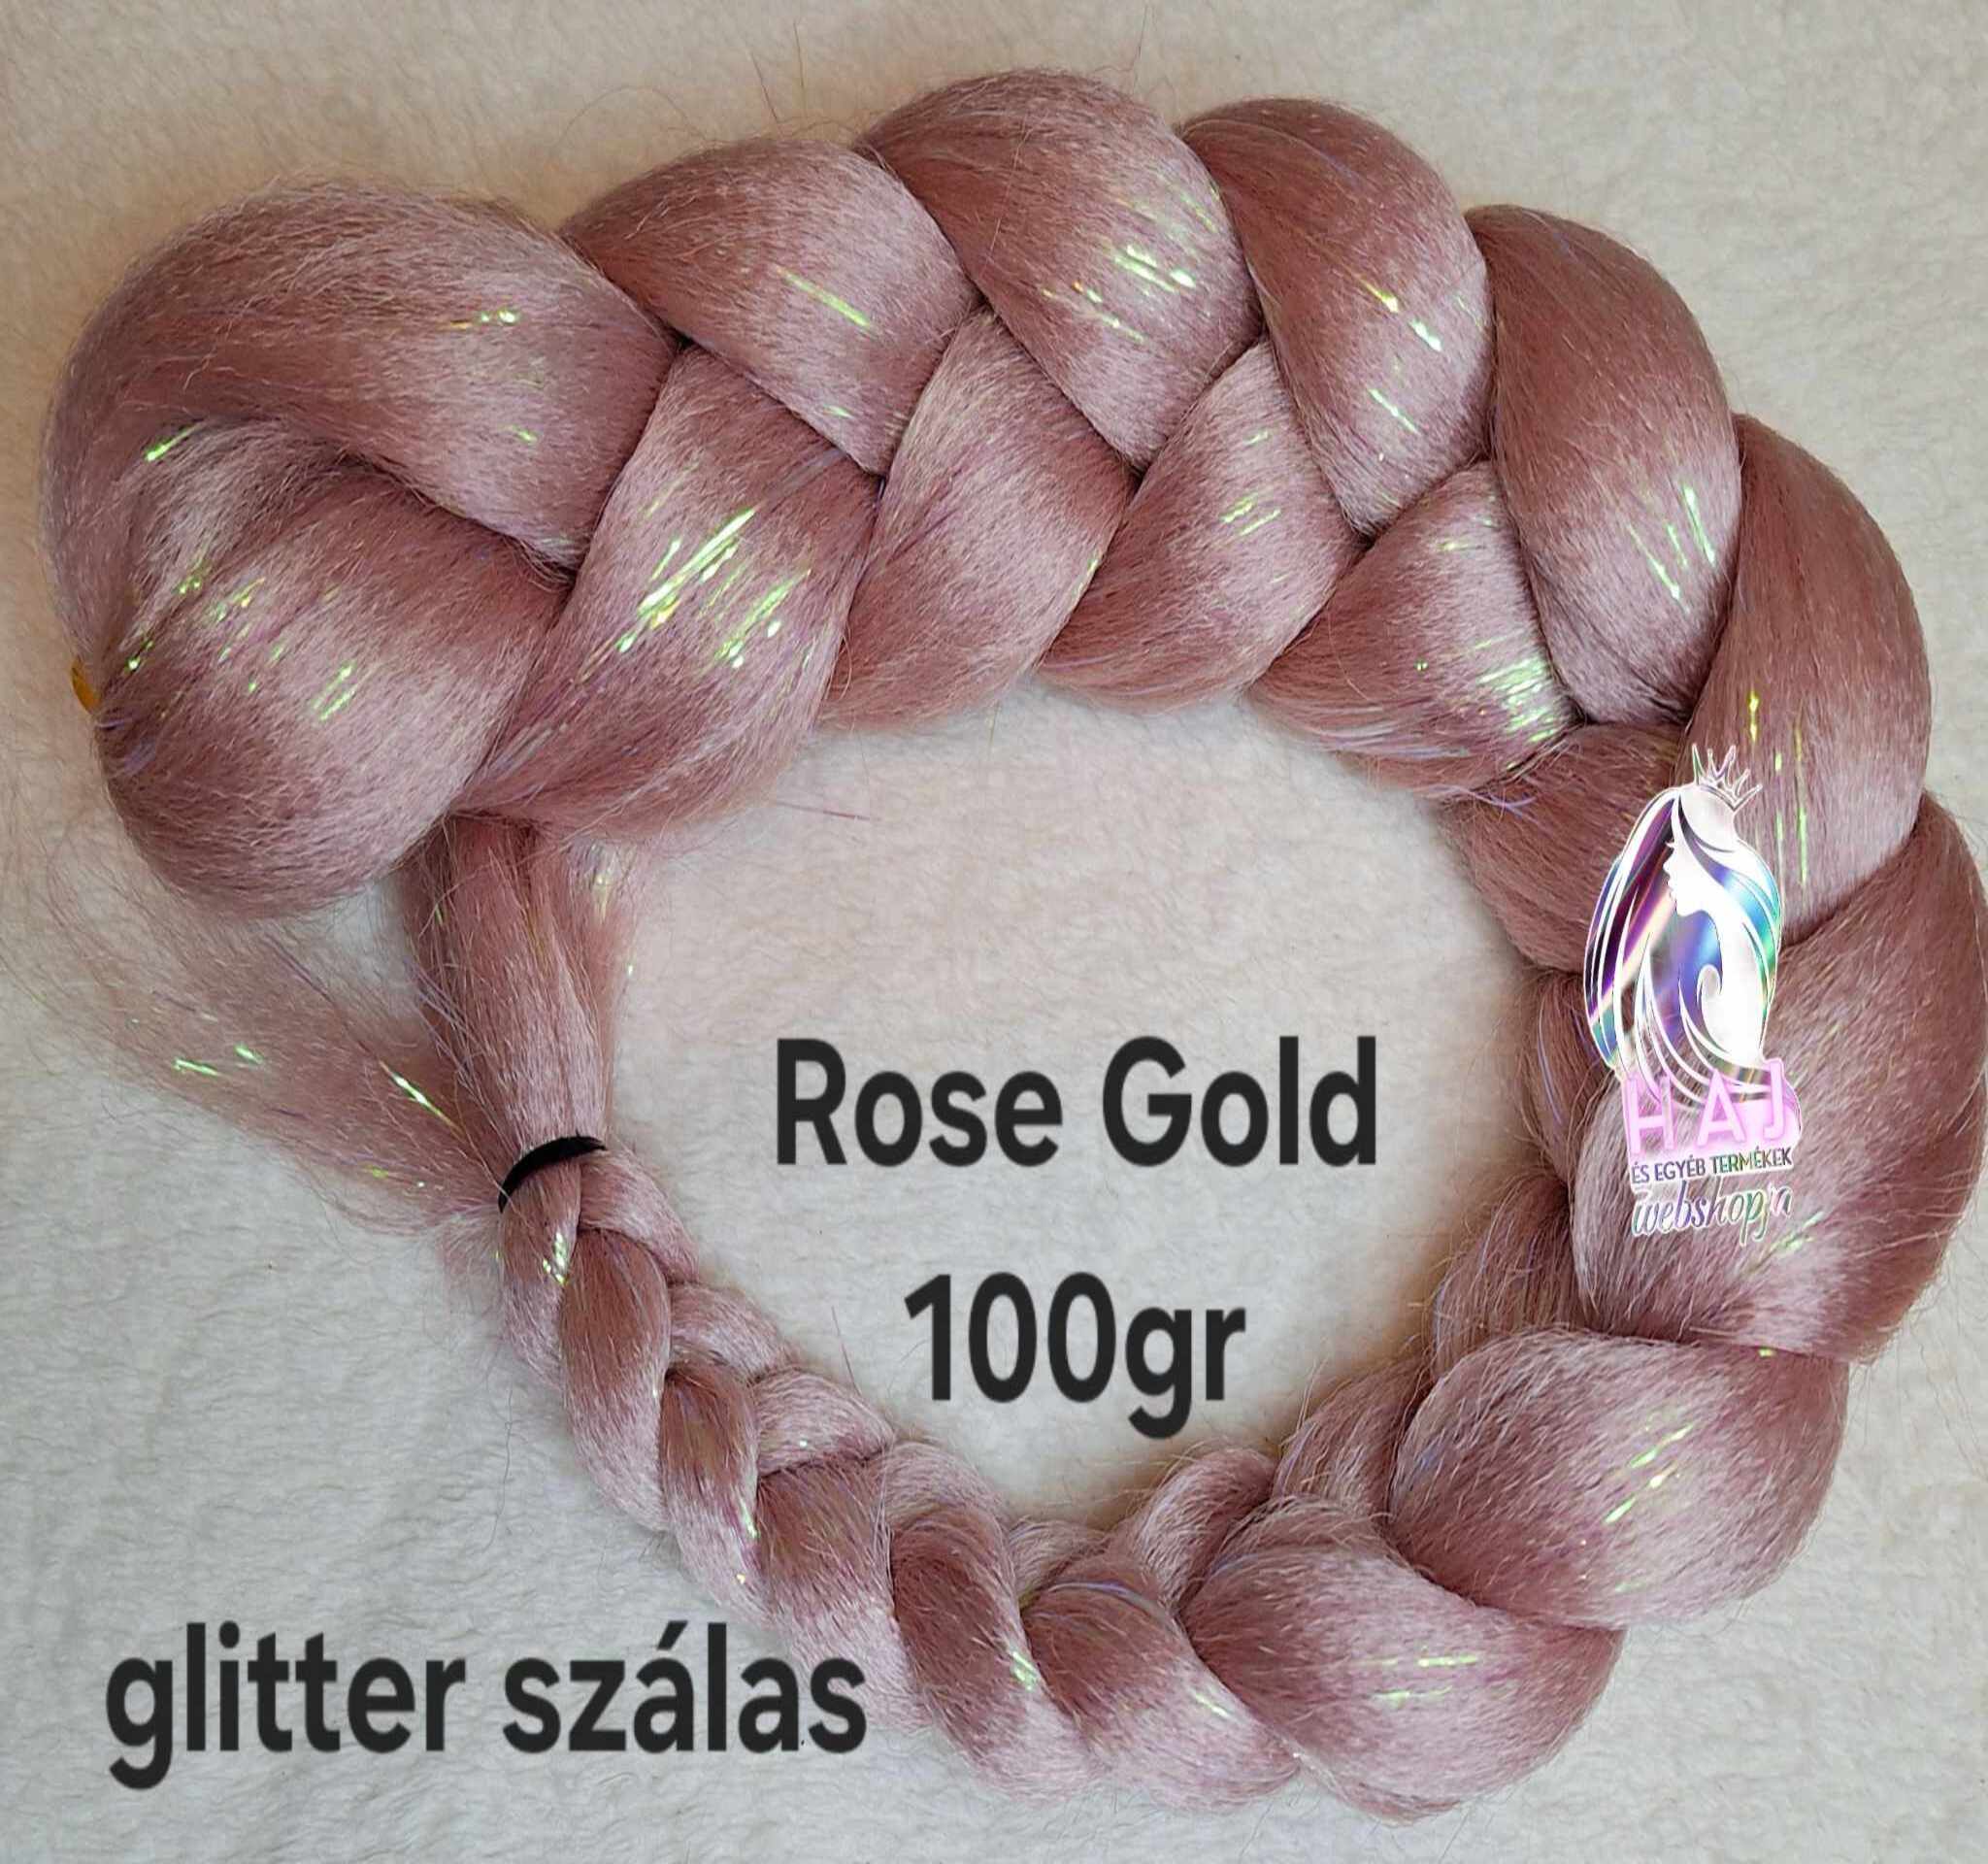 Rose Gold Glitter 100 gr - 1.800 Ft